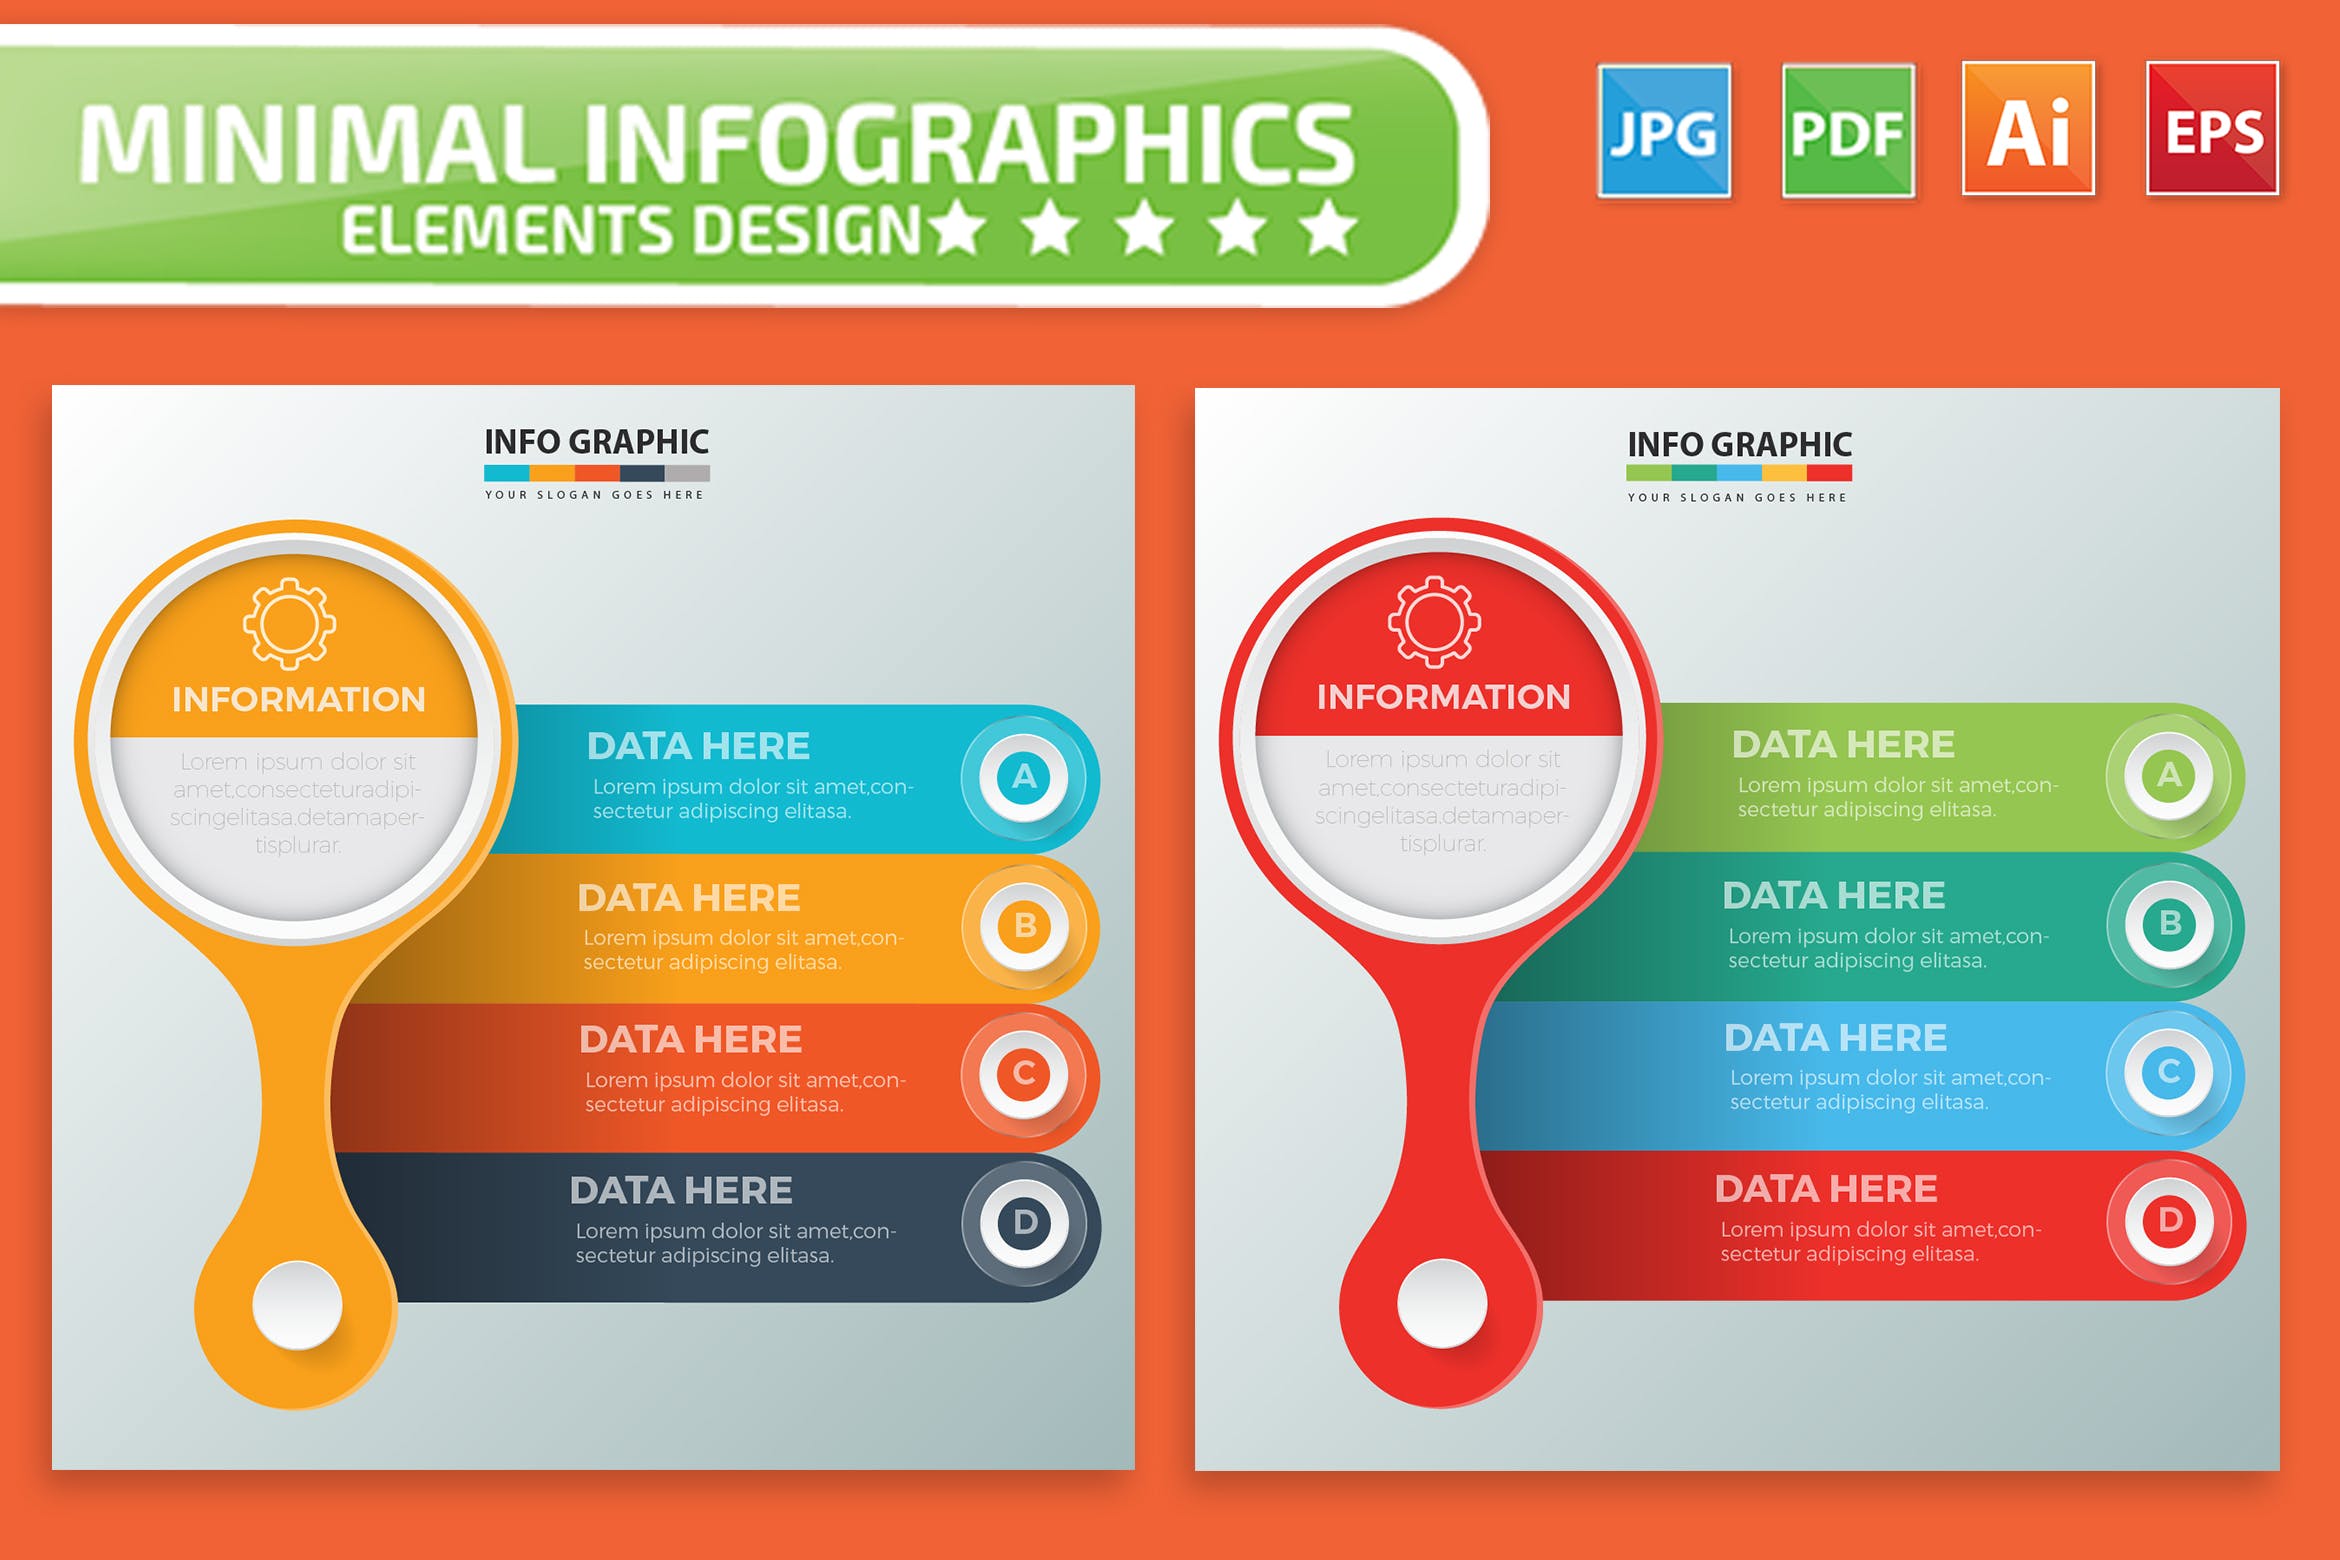 要点说明/重要特征信息图表矢量图形16图库精选素材v1 Infographic Elements Design插图